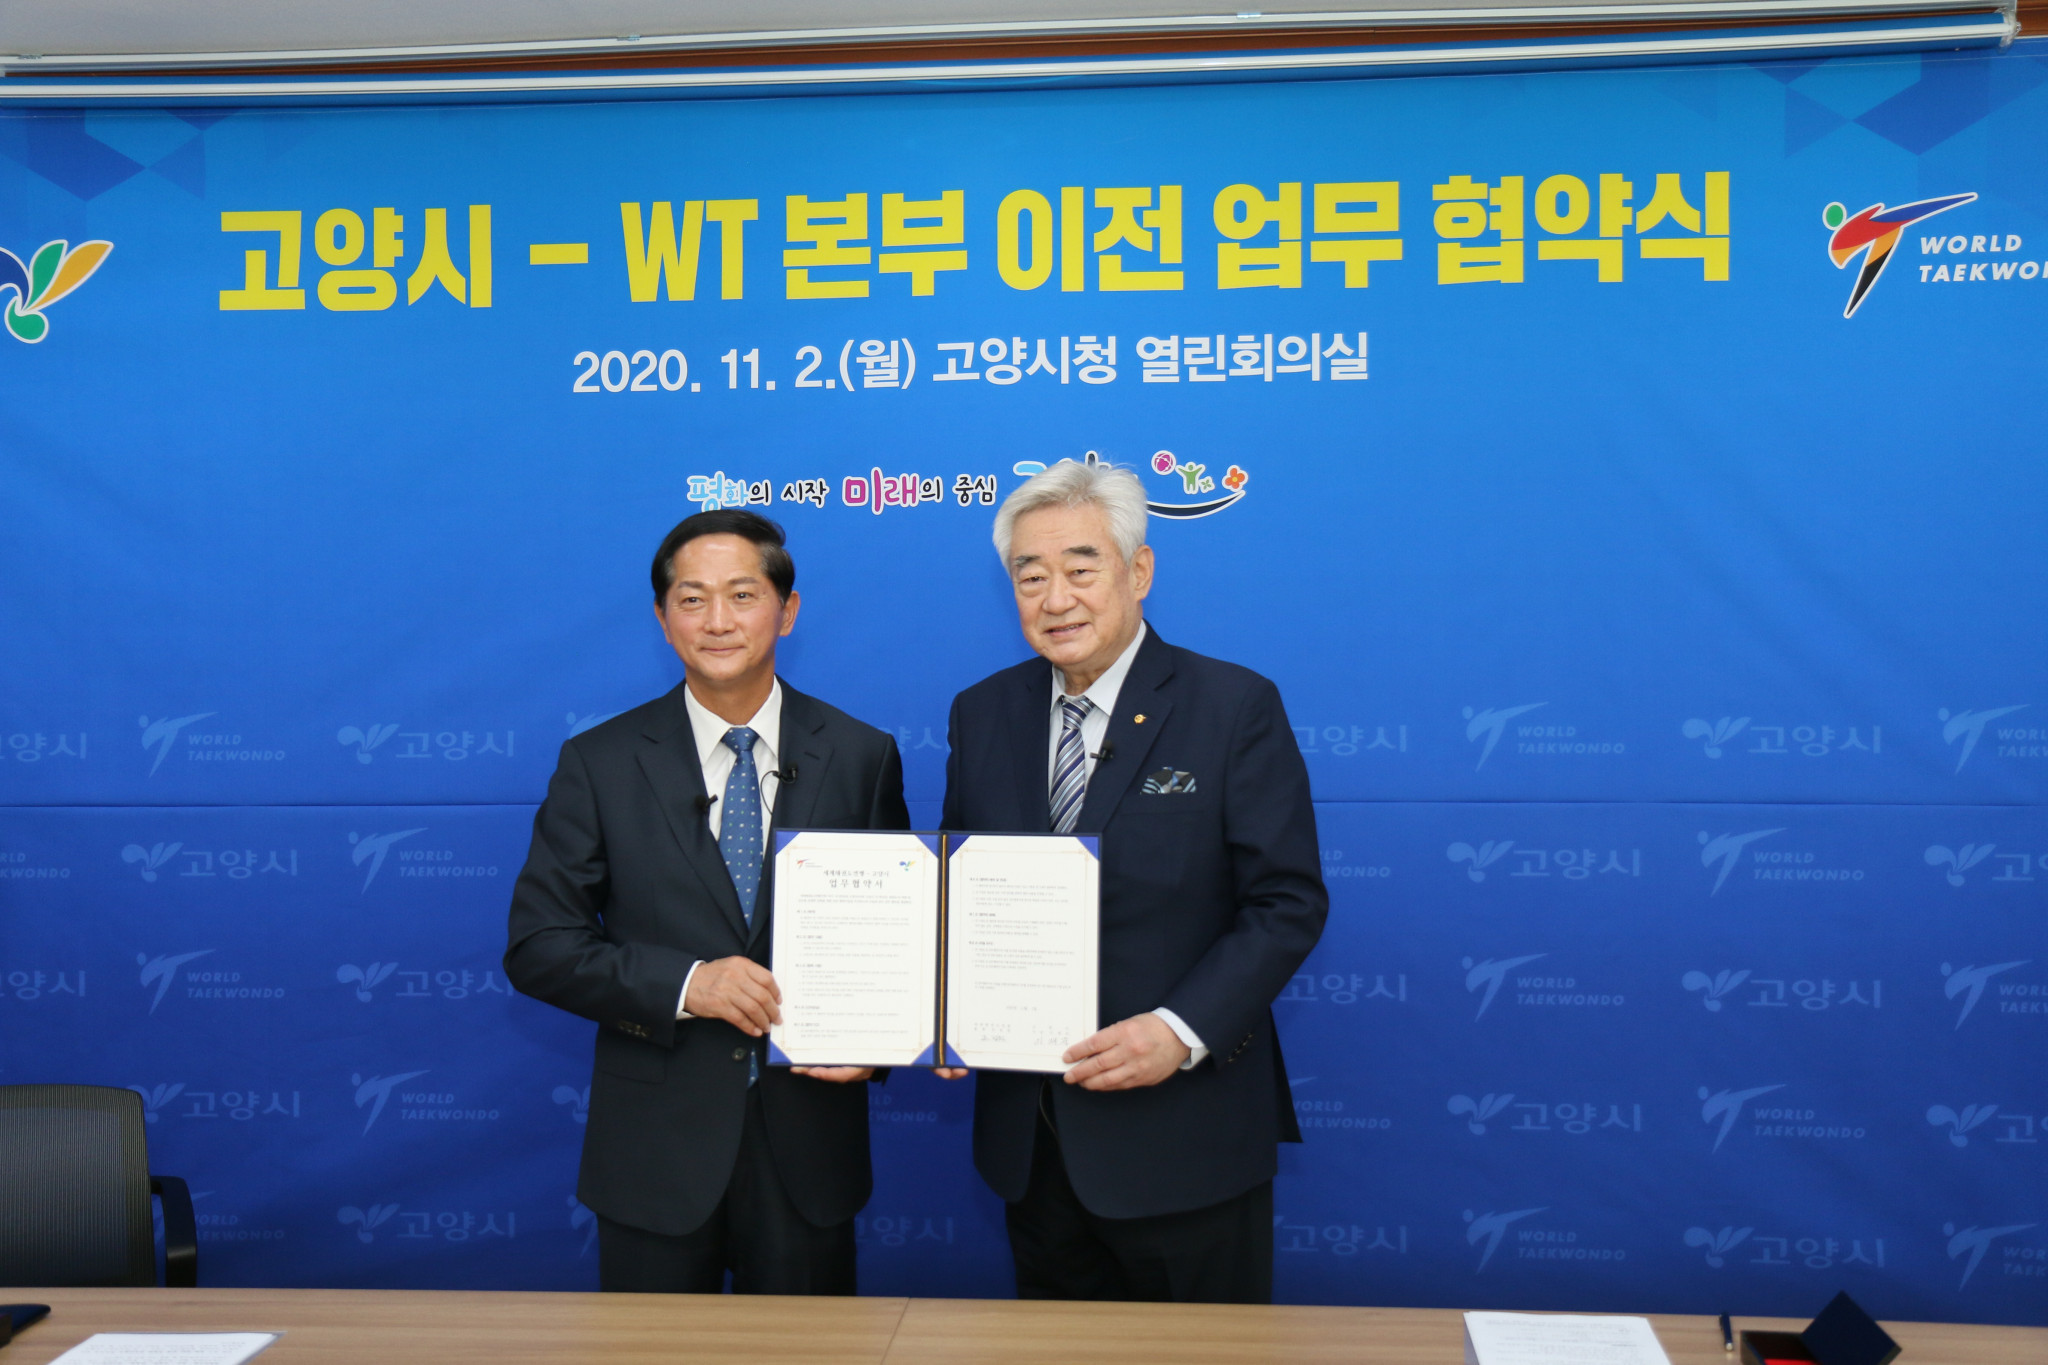 World Taekwondo President Chungwon Choue, right, signed an agreement today with Goyang Mayor Lee Jae-joon ©World Taekwondo